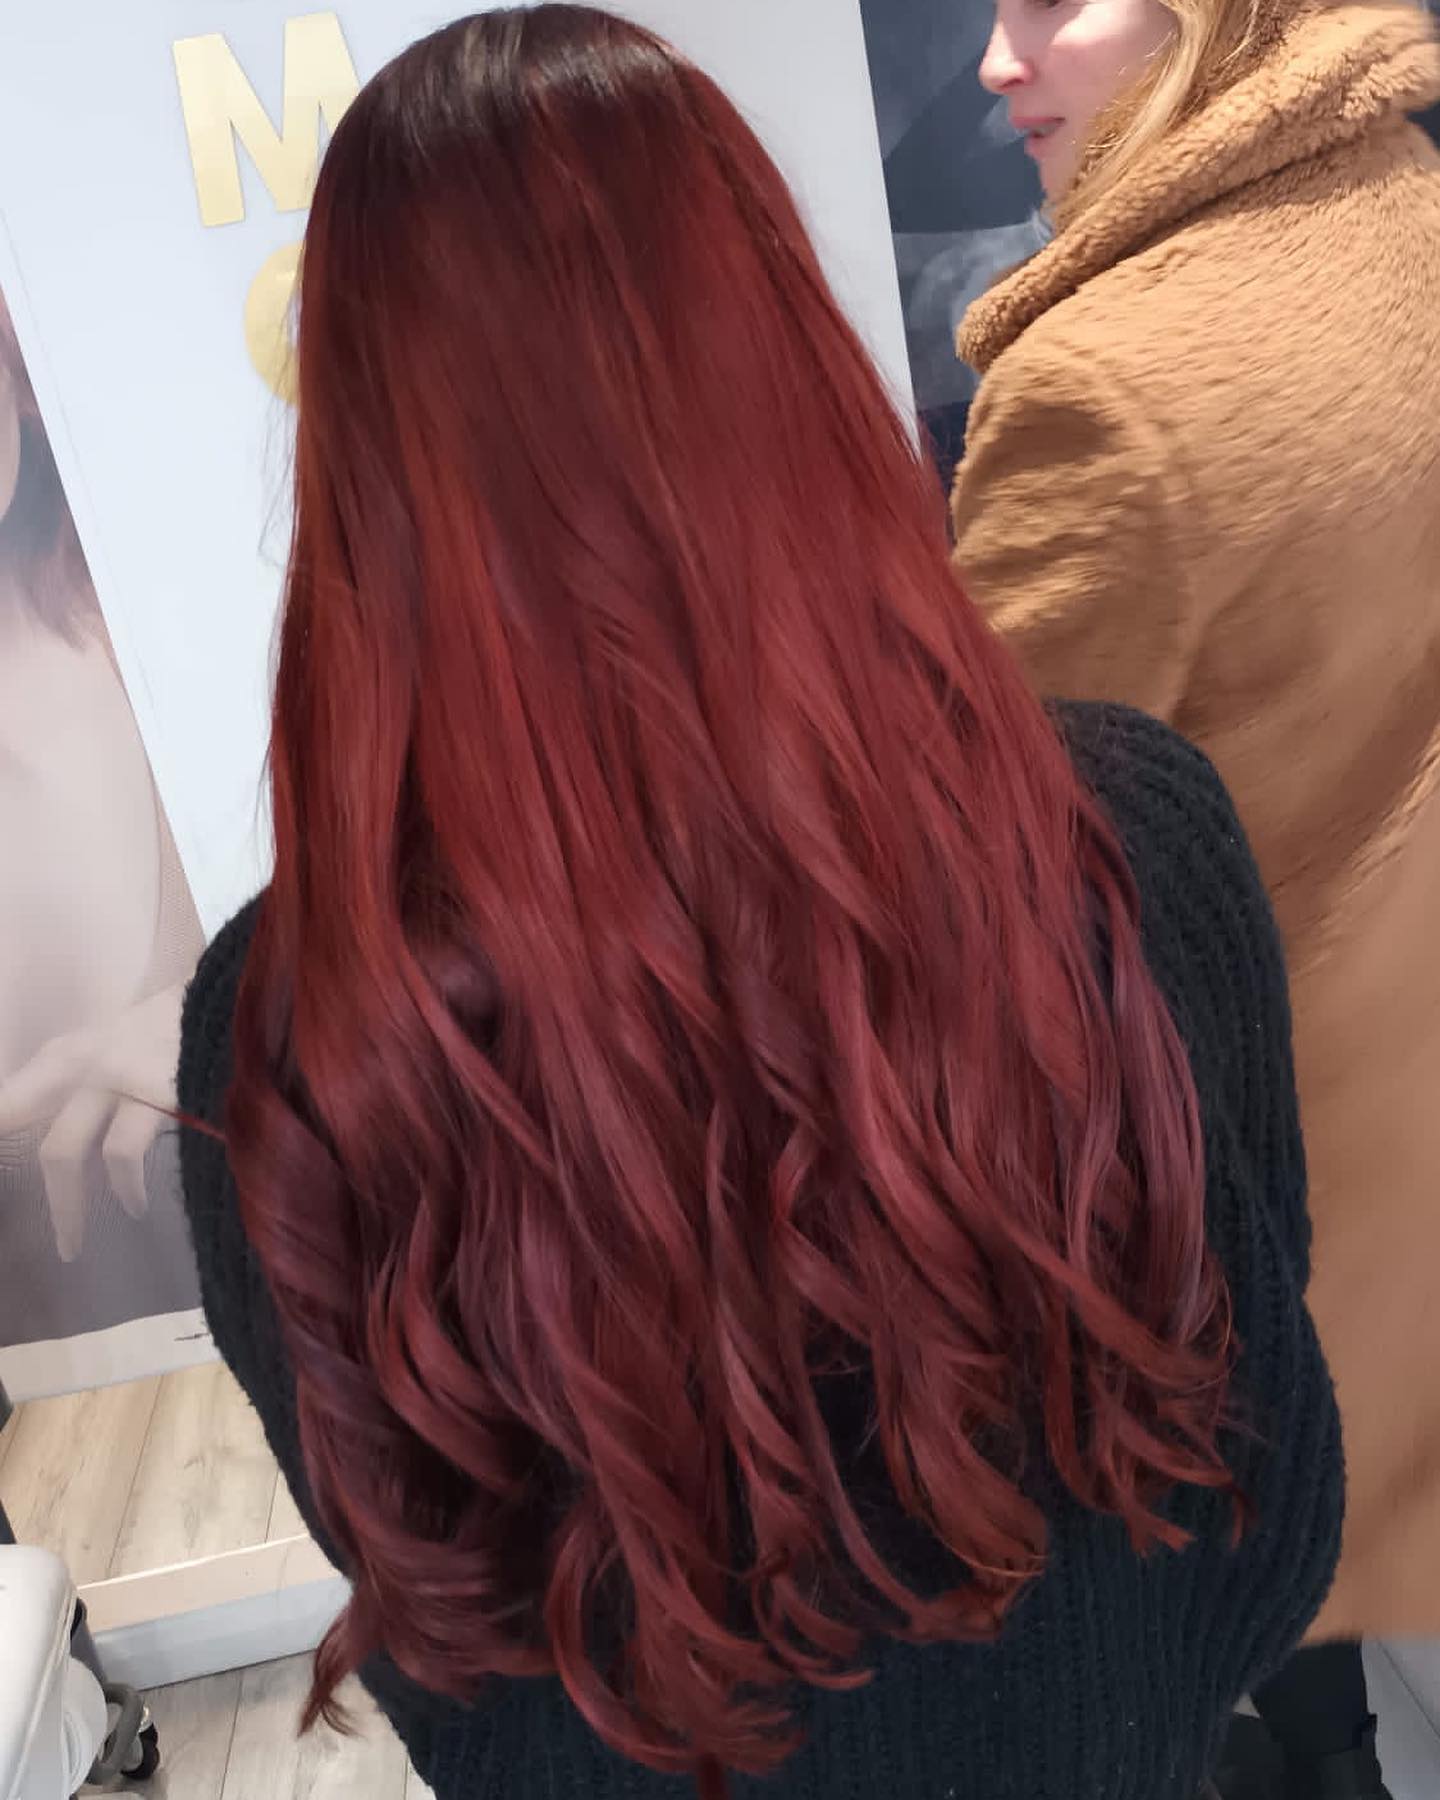 bright red hair color 145 Bright Red Hair Color | Bright red hair color for dark hair | Bright red hair color ideas Bright Red Hair Color